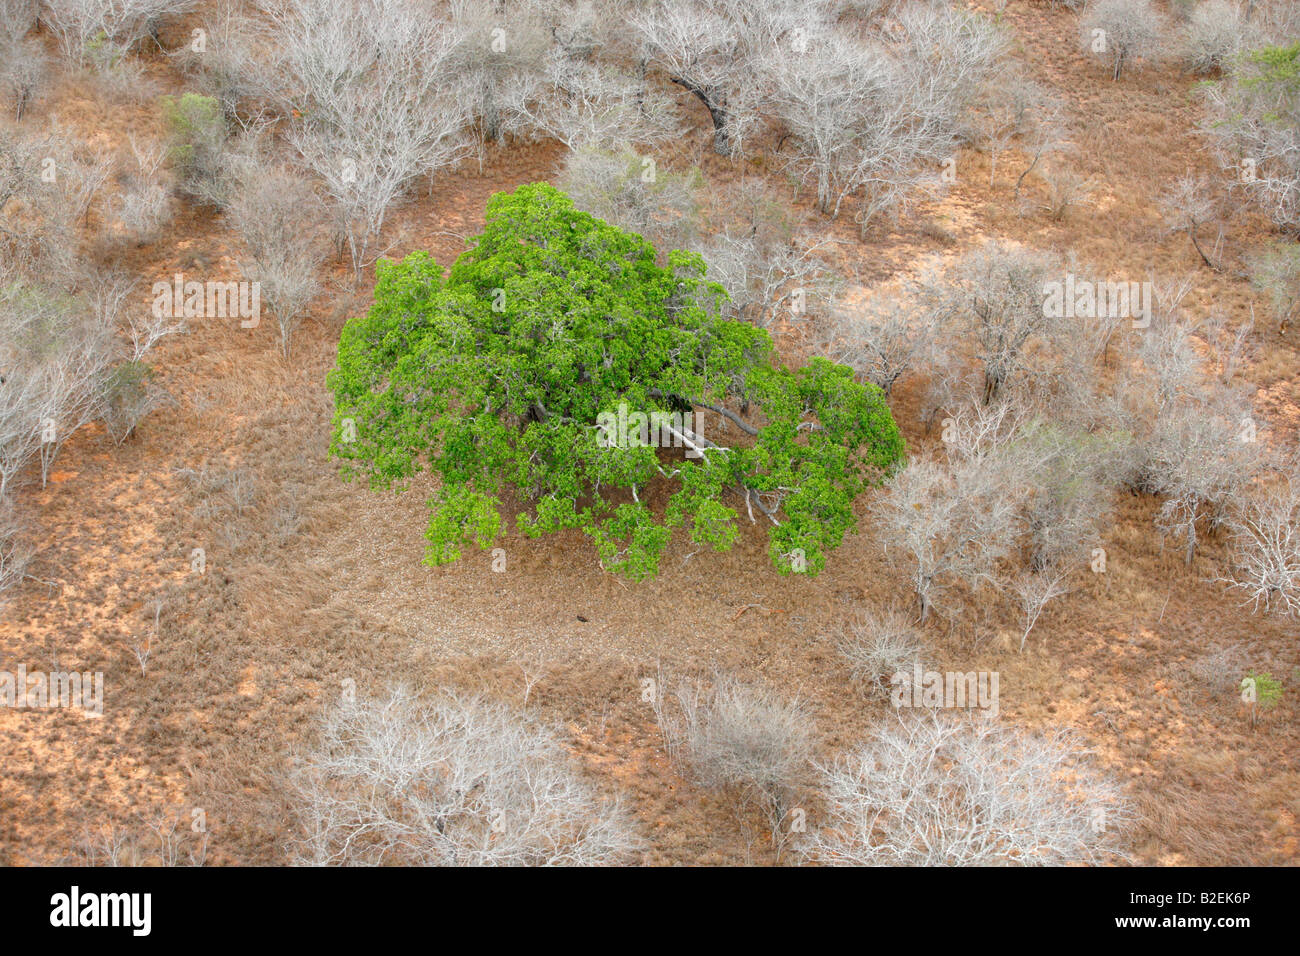 Luftaufnahme von einem Affenbrotbaum (Affenbrotbäume Digitata) in voller Blatt in einer ansonsten trockenen Wäldern von oben gesehen. Stockfoto